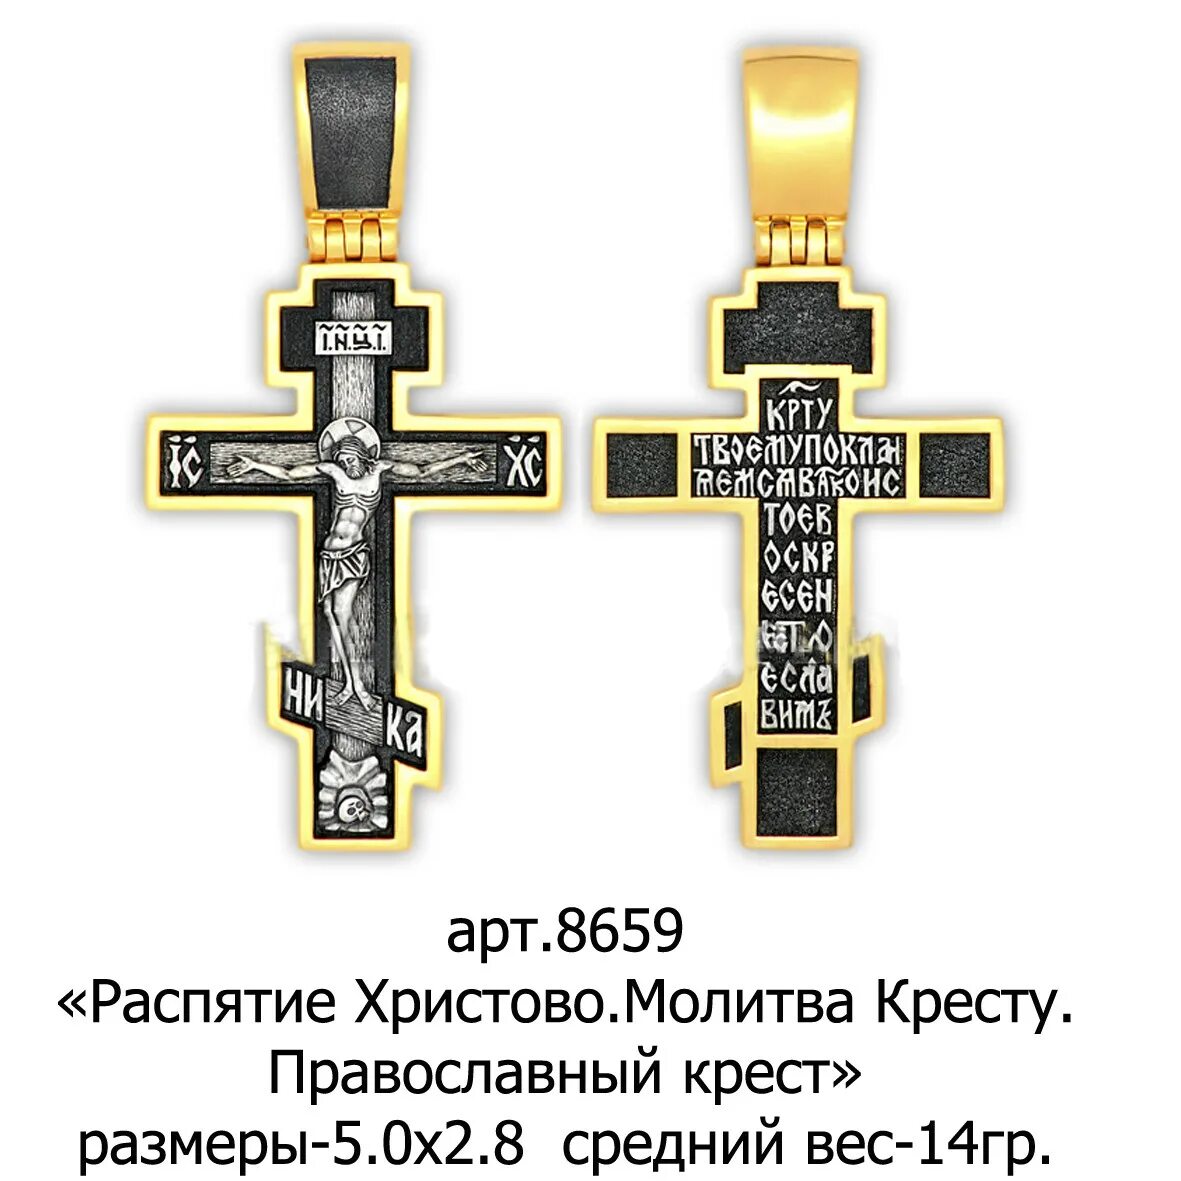 Православный крест. Православный крестик. Формы православных крестов. Православие крест.